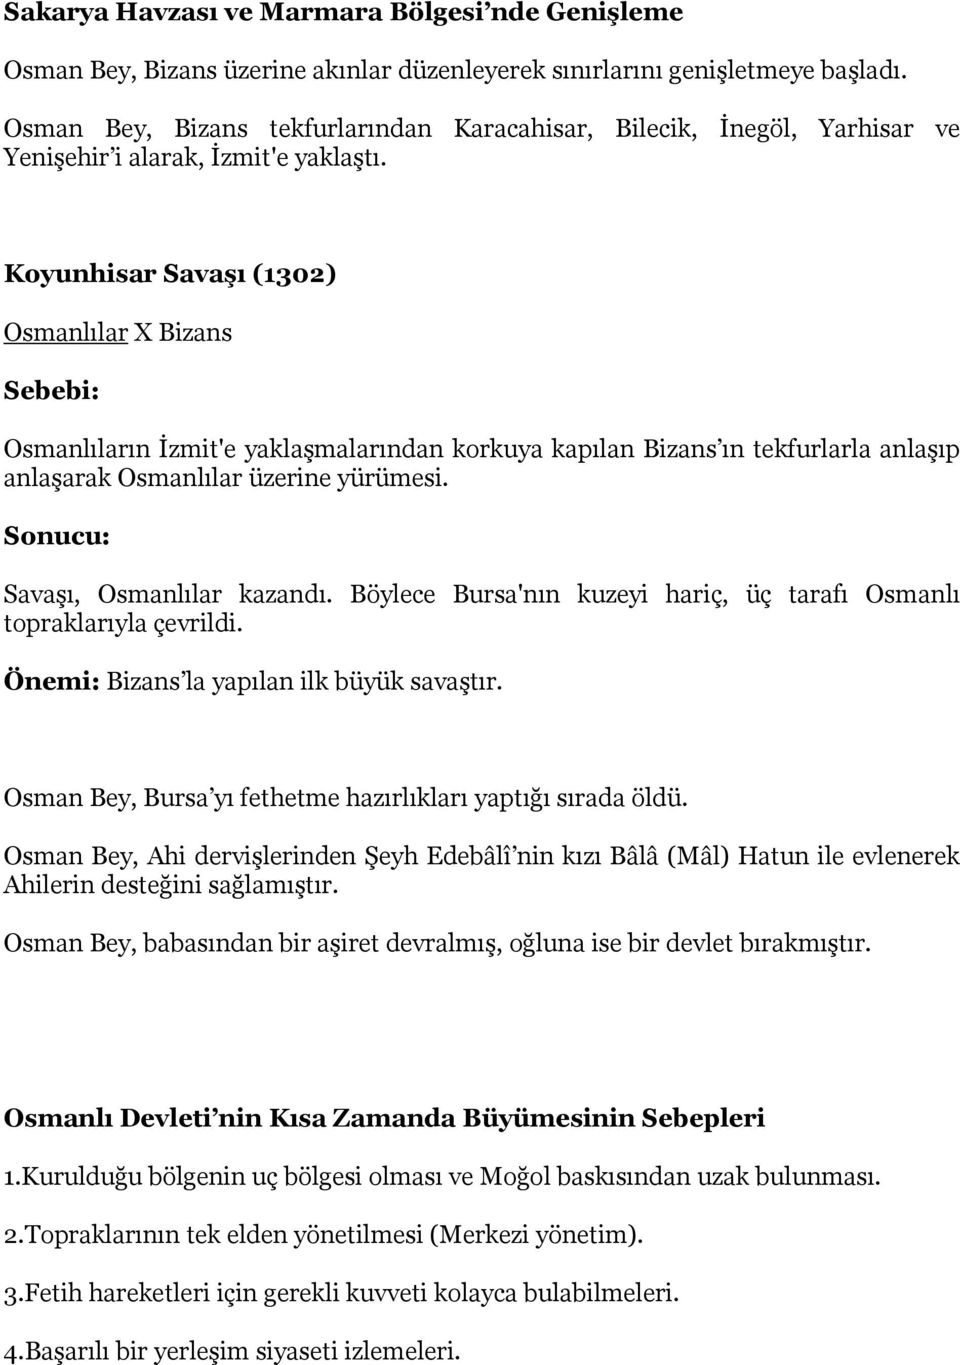 Koyunhisar SavaĢı (1302) Osmanlılar X Bizans Sebebi: Osmanlıların İzmit'e yaklaşmalarından korkuya kapılan Bizans ın tekfurlarla anlaşıp anlaşarak Osmanlılar üzerine yürümesi.